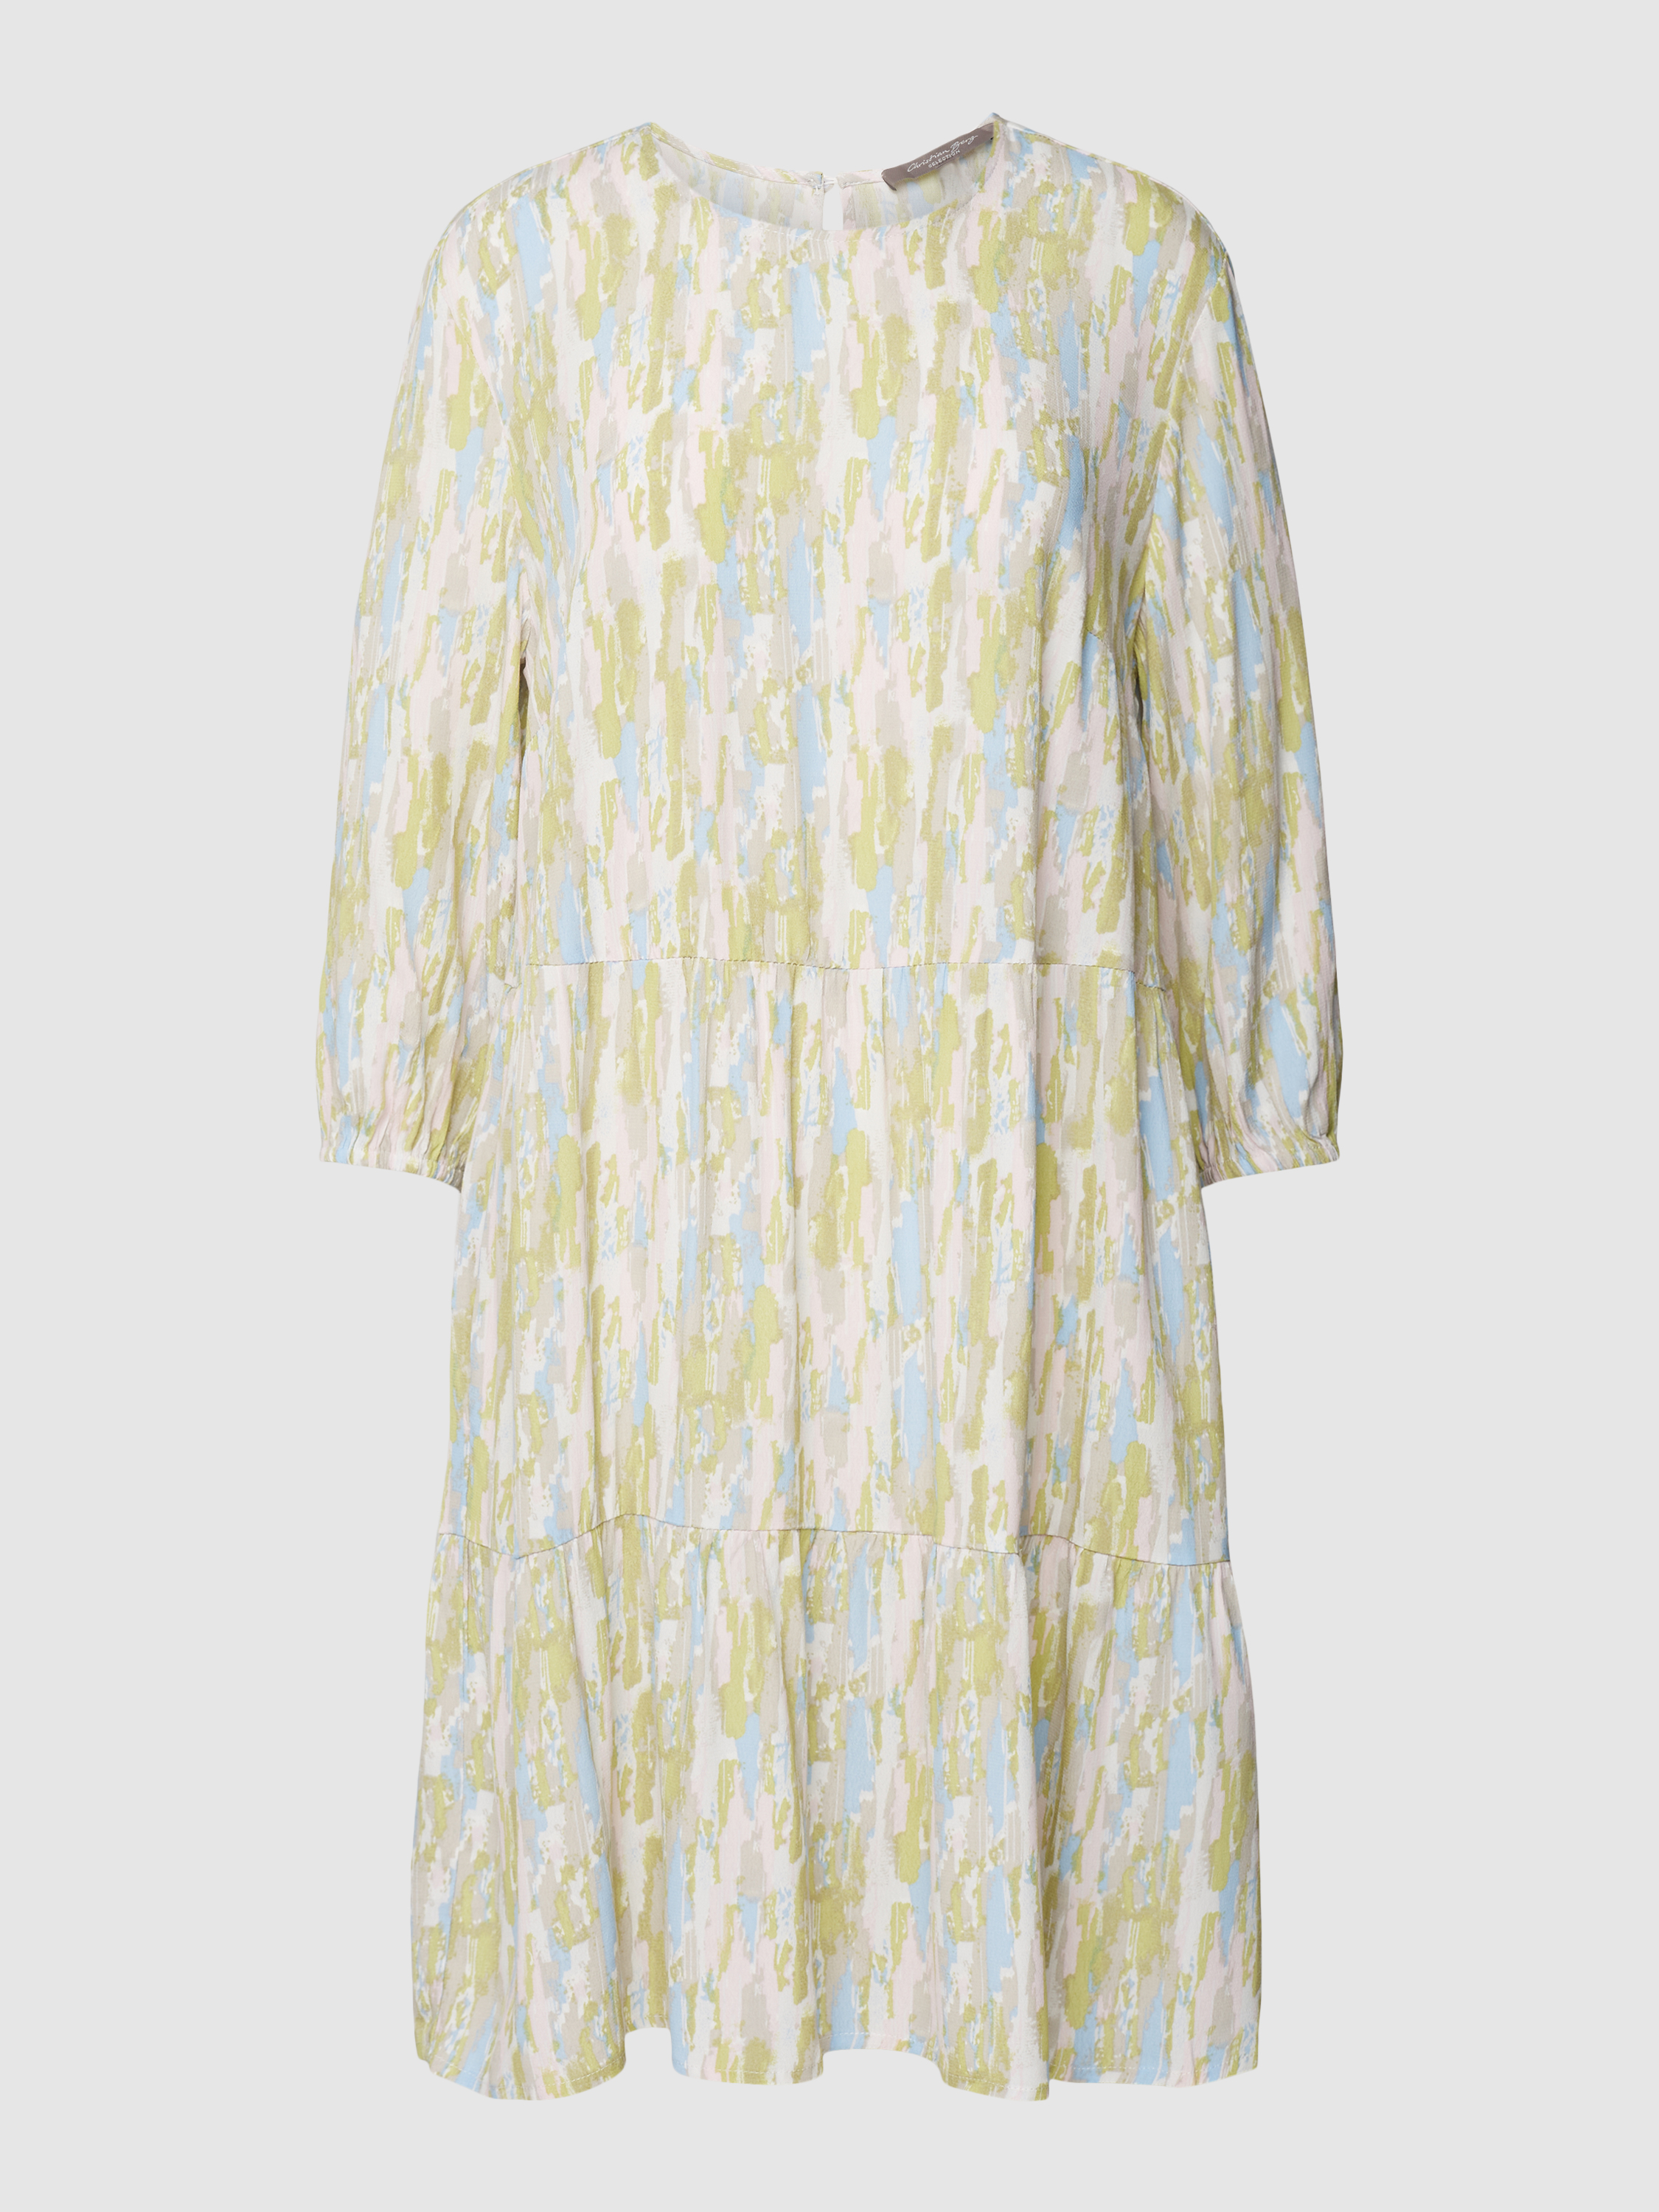 Платье женское Christian Berg Woman Selection 1781261 розовое 38 (доставка из-за рубежа)